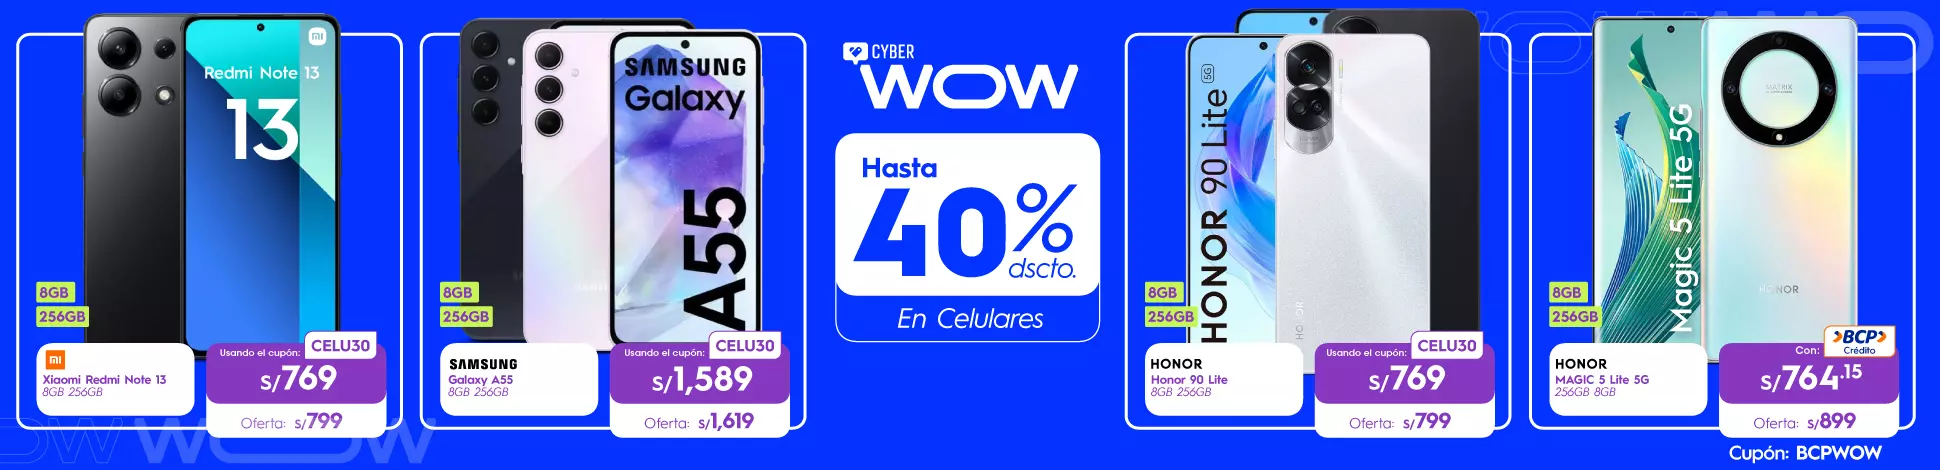 hs-CW-abril24-celulares (3).webp | Juntoz.com